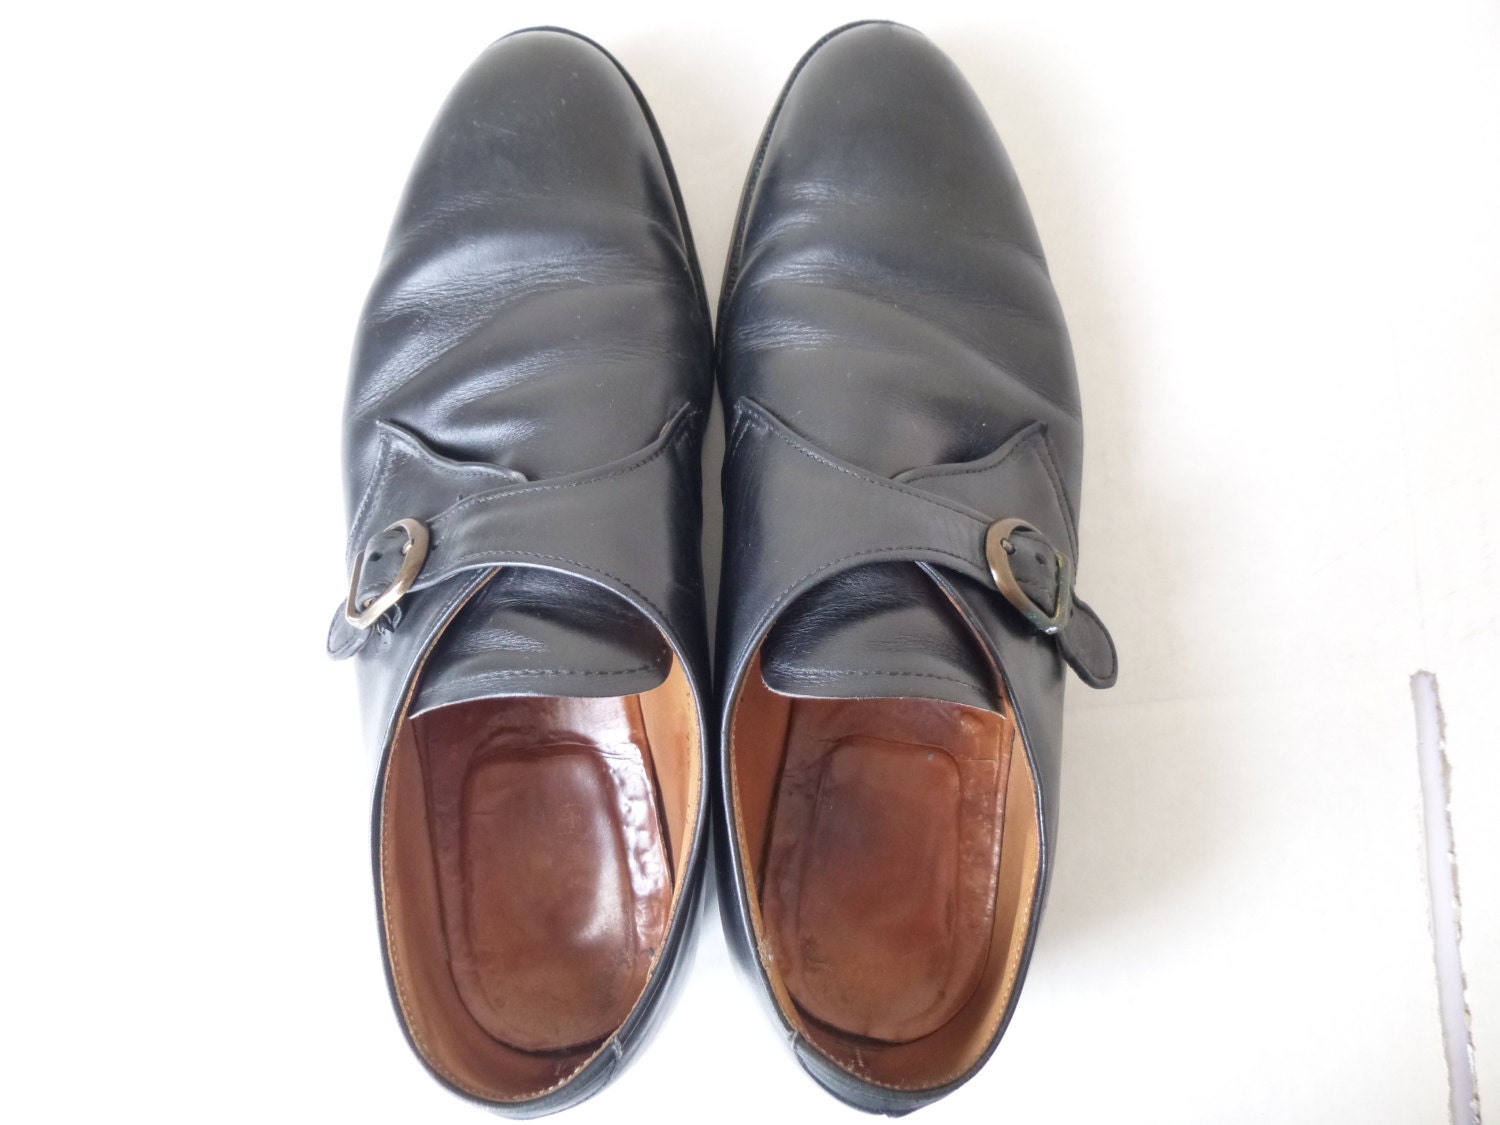 Vintage Men's Oxford Shoes Alden Monk Strap Calfskin